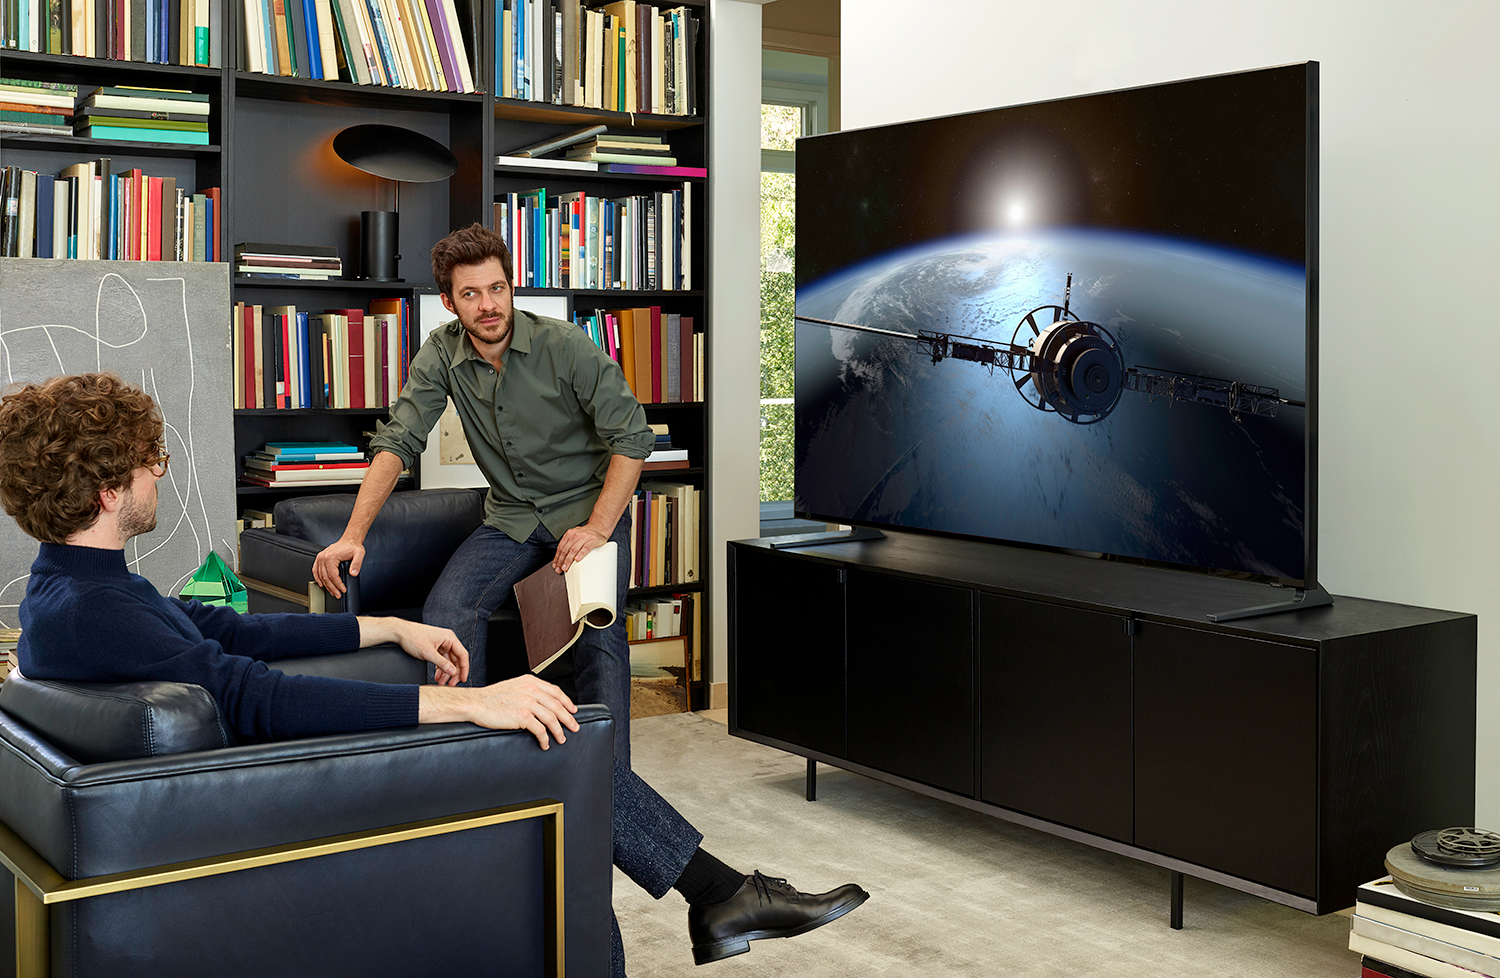 Comment choisir un téléviseur adapté à votre espace - Blogue Best Buy